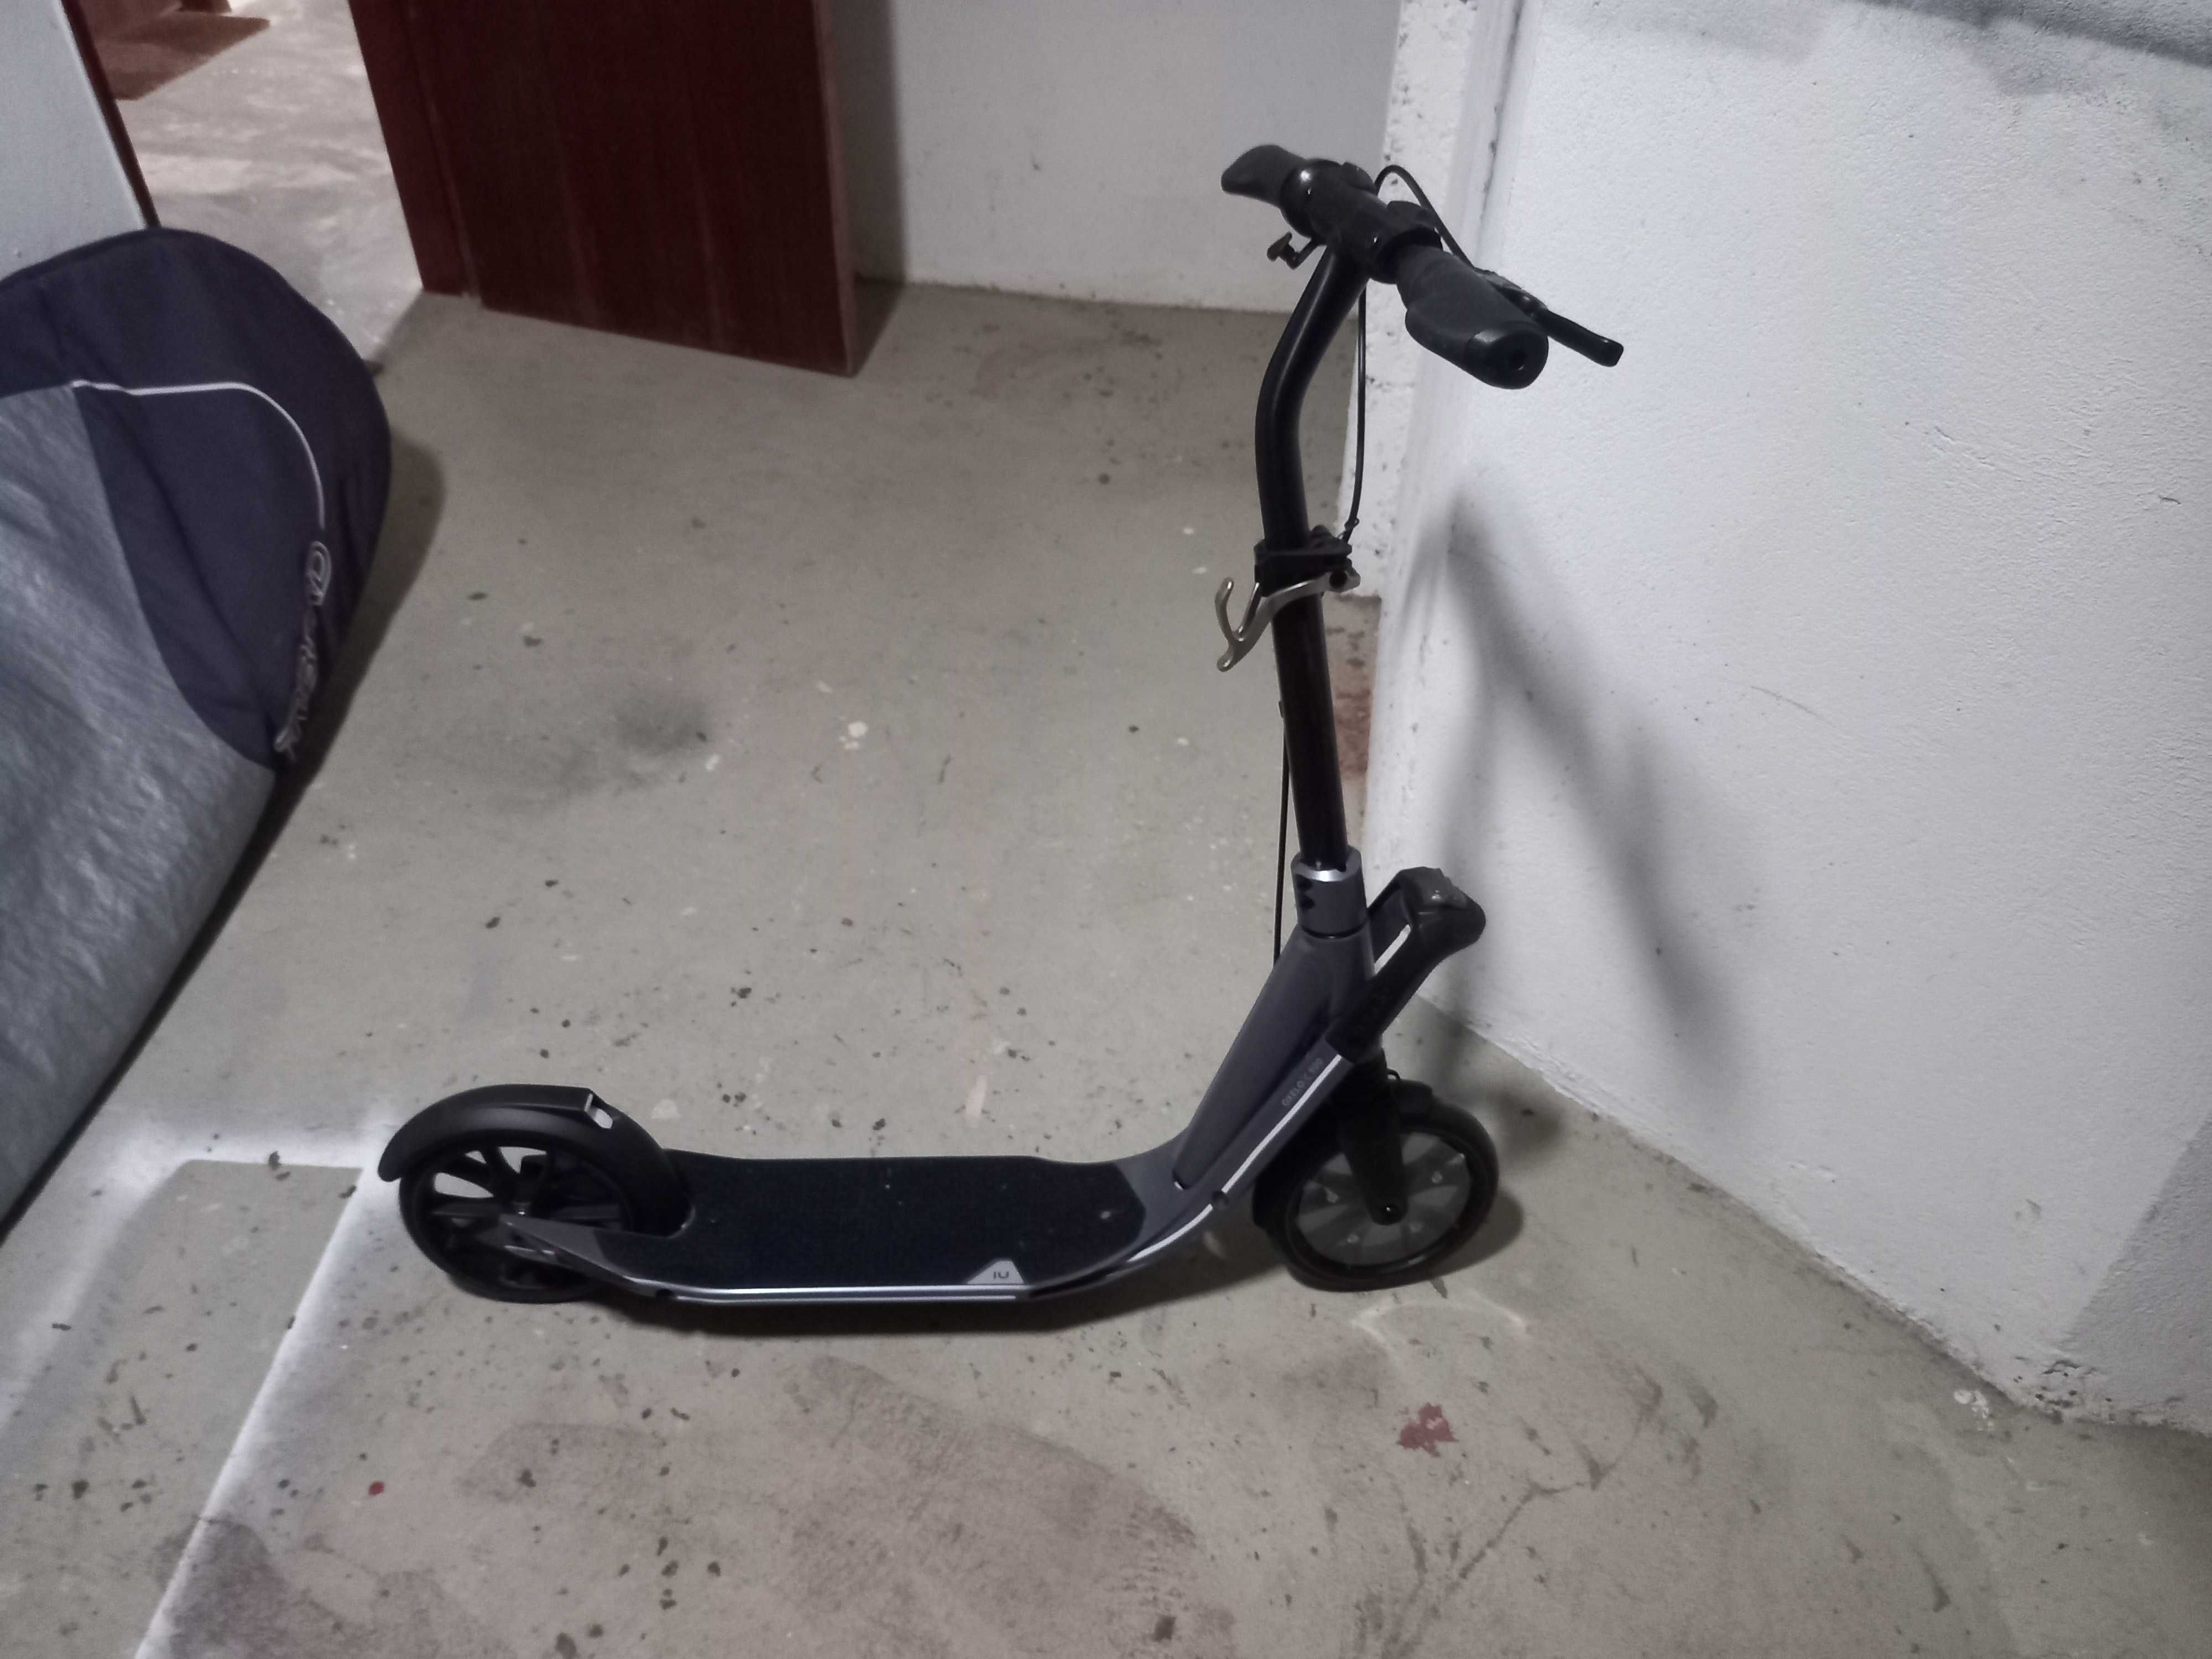 Vendo scooter manual completamente nova (sem uso)